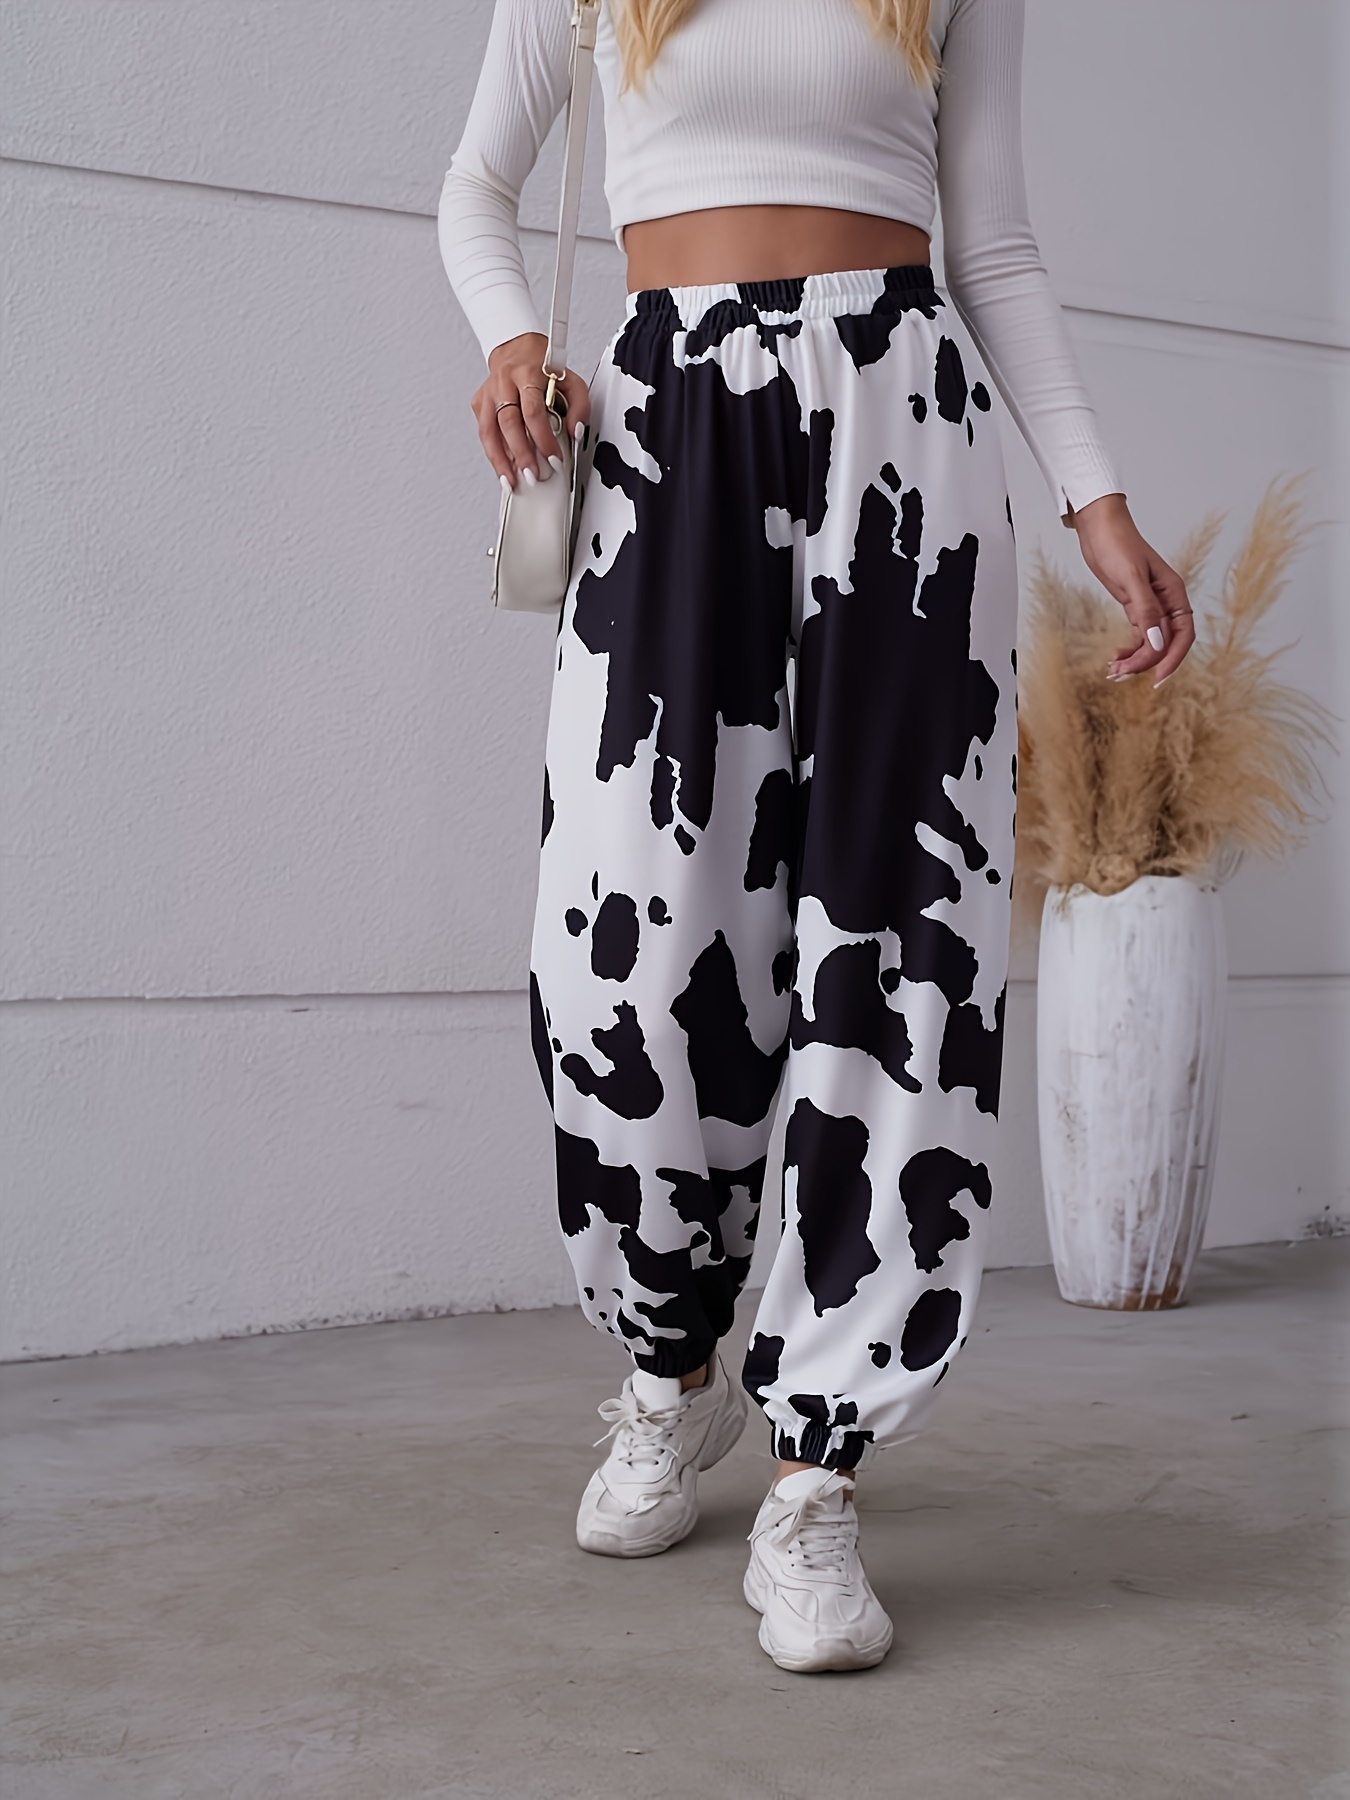 Cow Print Pants & Joggers - The Cow Print Pants - Korean Fashion